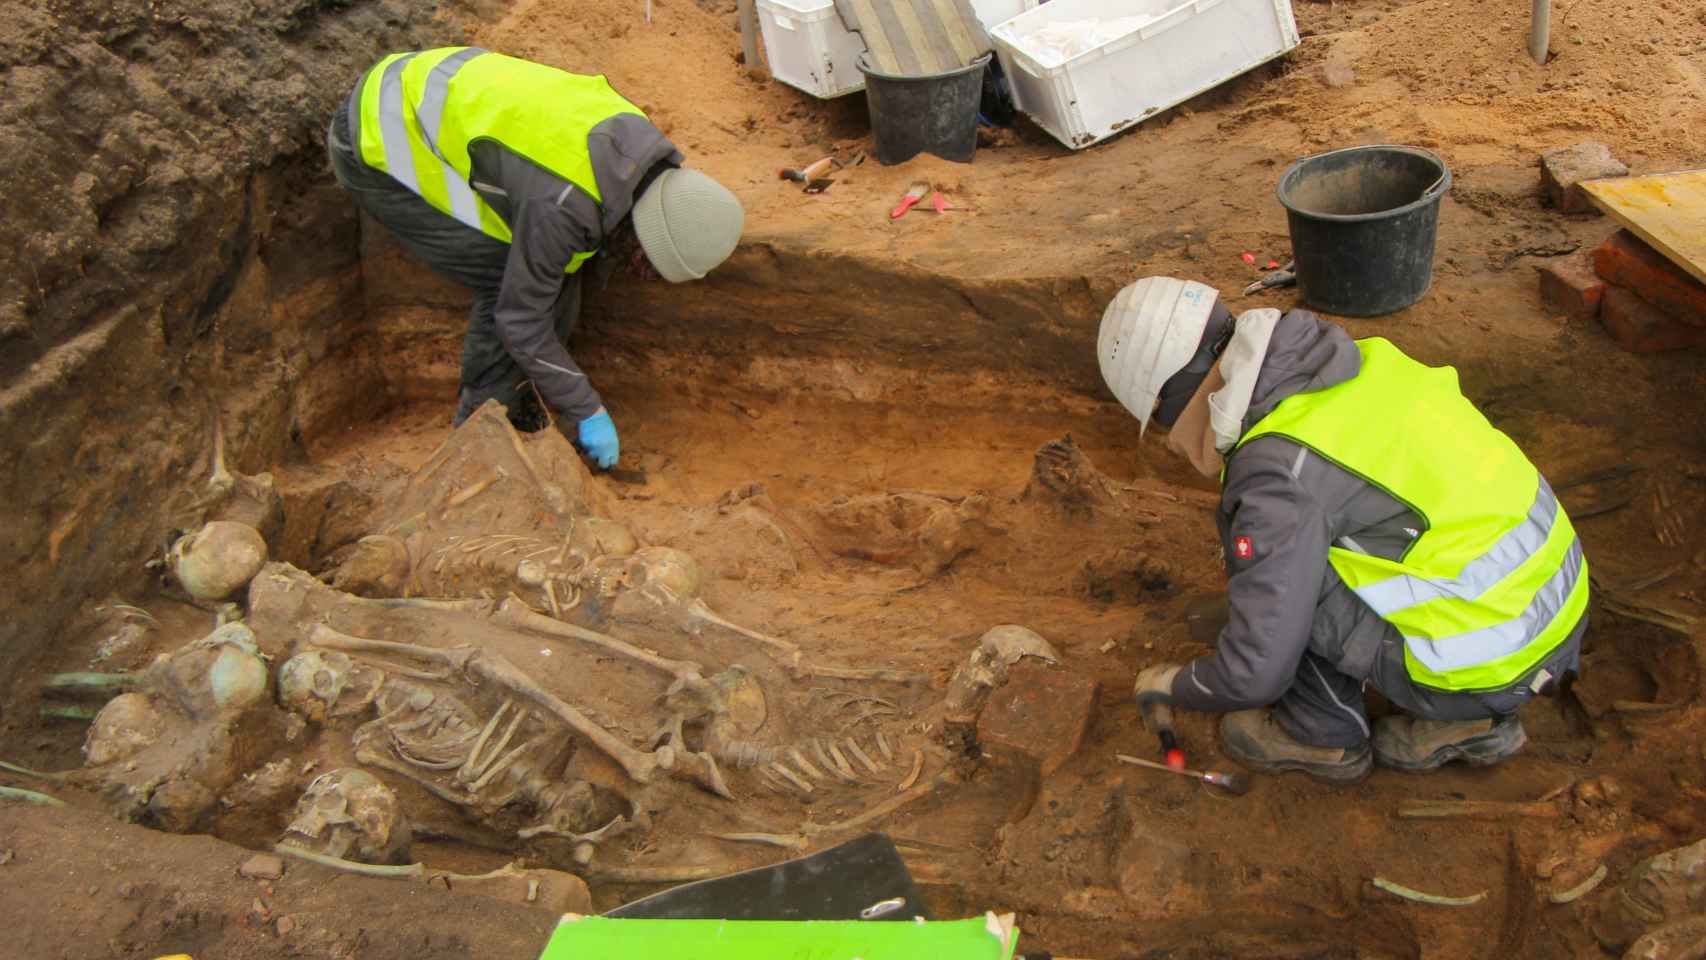 Investigadores excavando en una de las fosas comunes encontradas